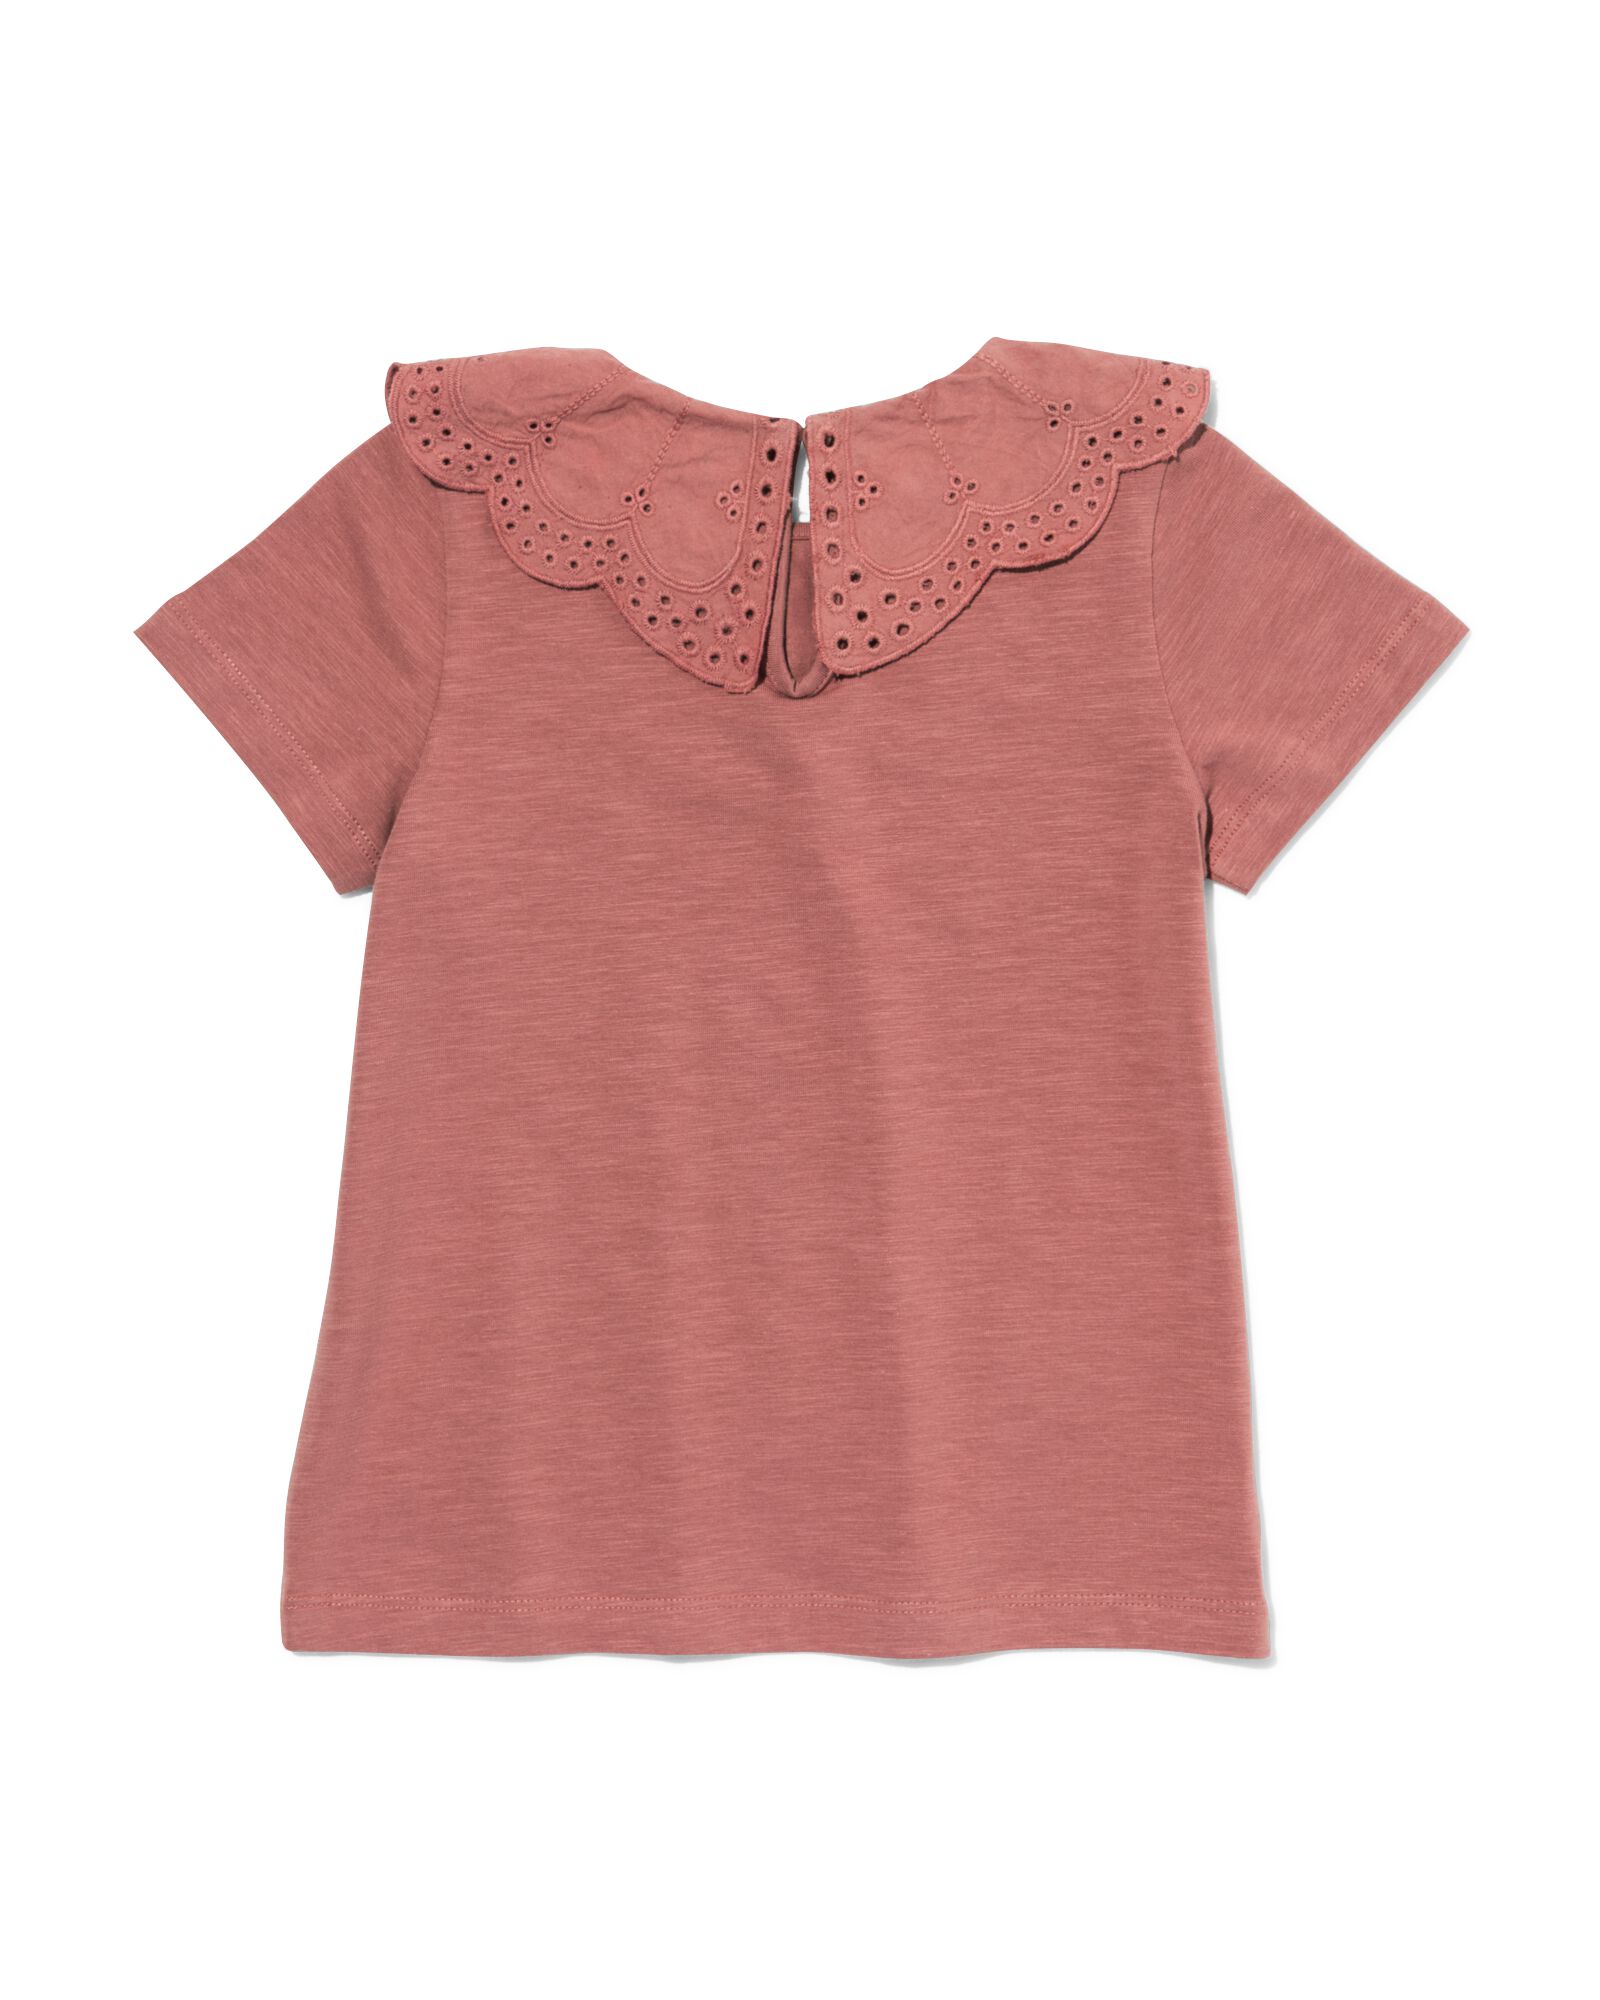 t-shirt enfant avec col en broderie roze 86/92 - 30874047 - HEMA